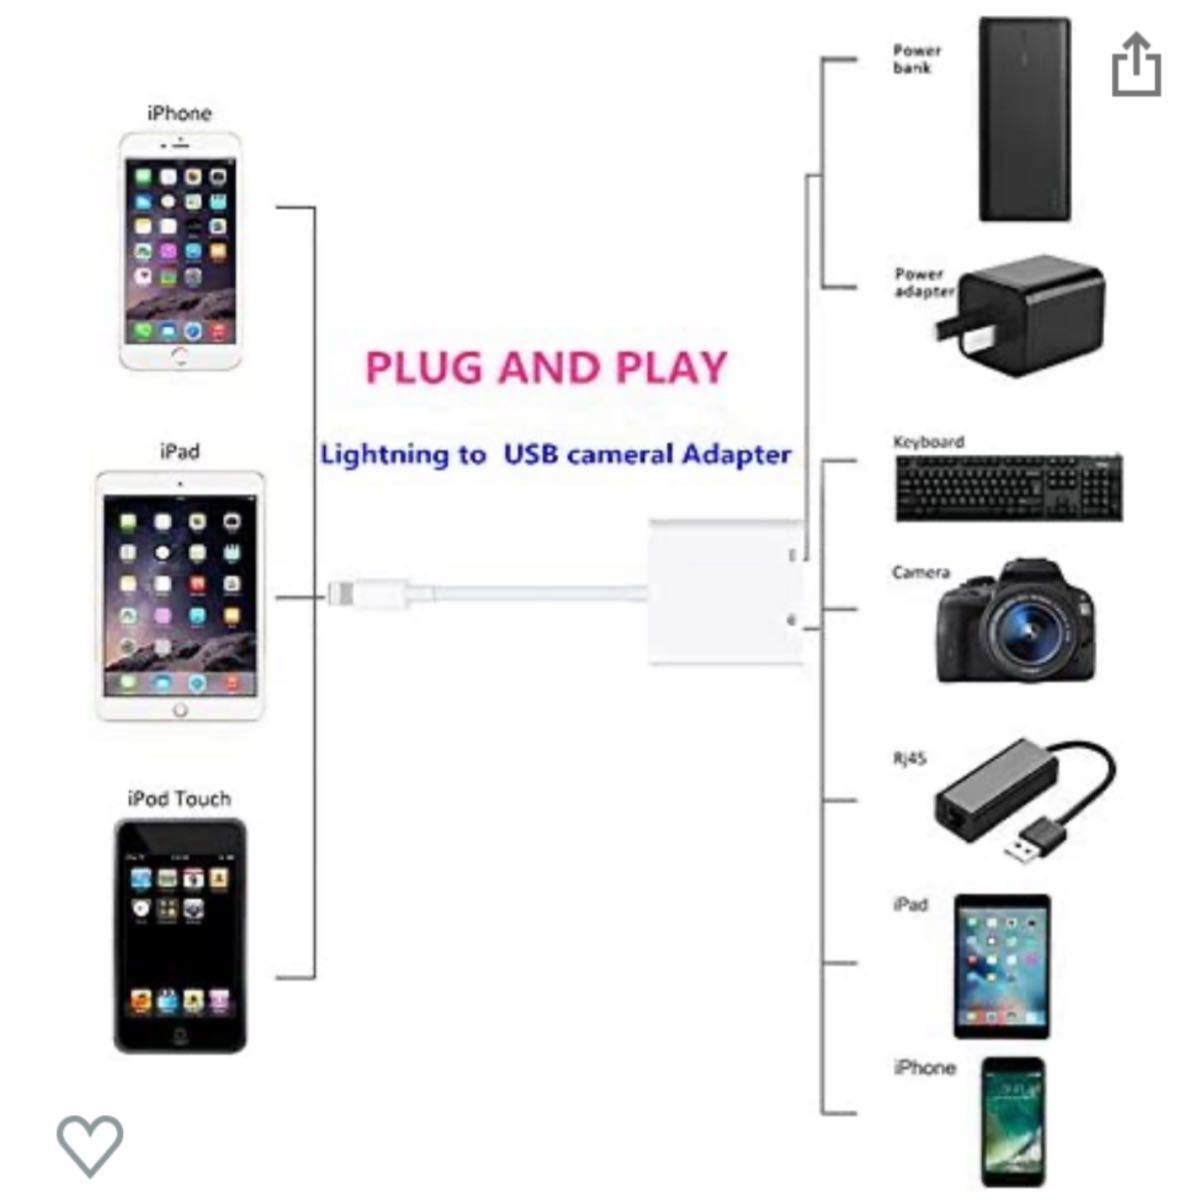 Lightning 用usbカメラアダプタ USBハブ キーボード接続可能 iPhone/iPadなど対応3カメラアダプタ 